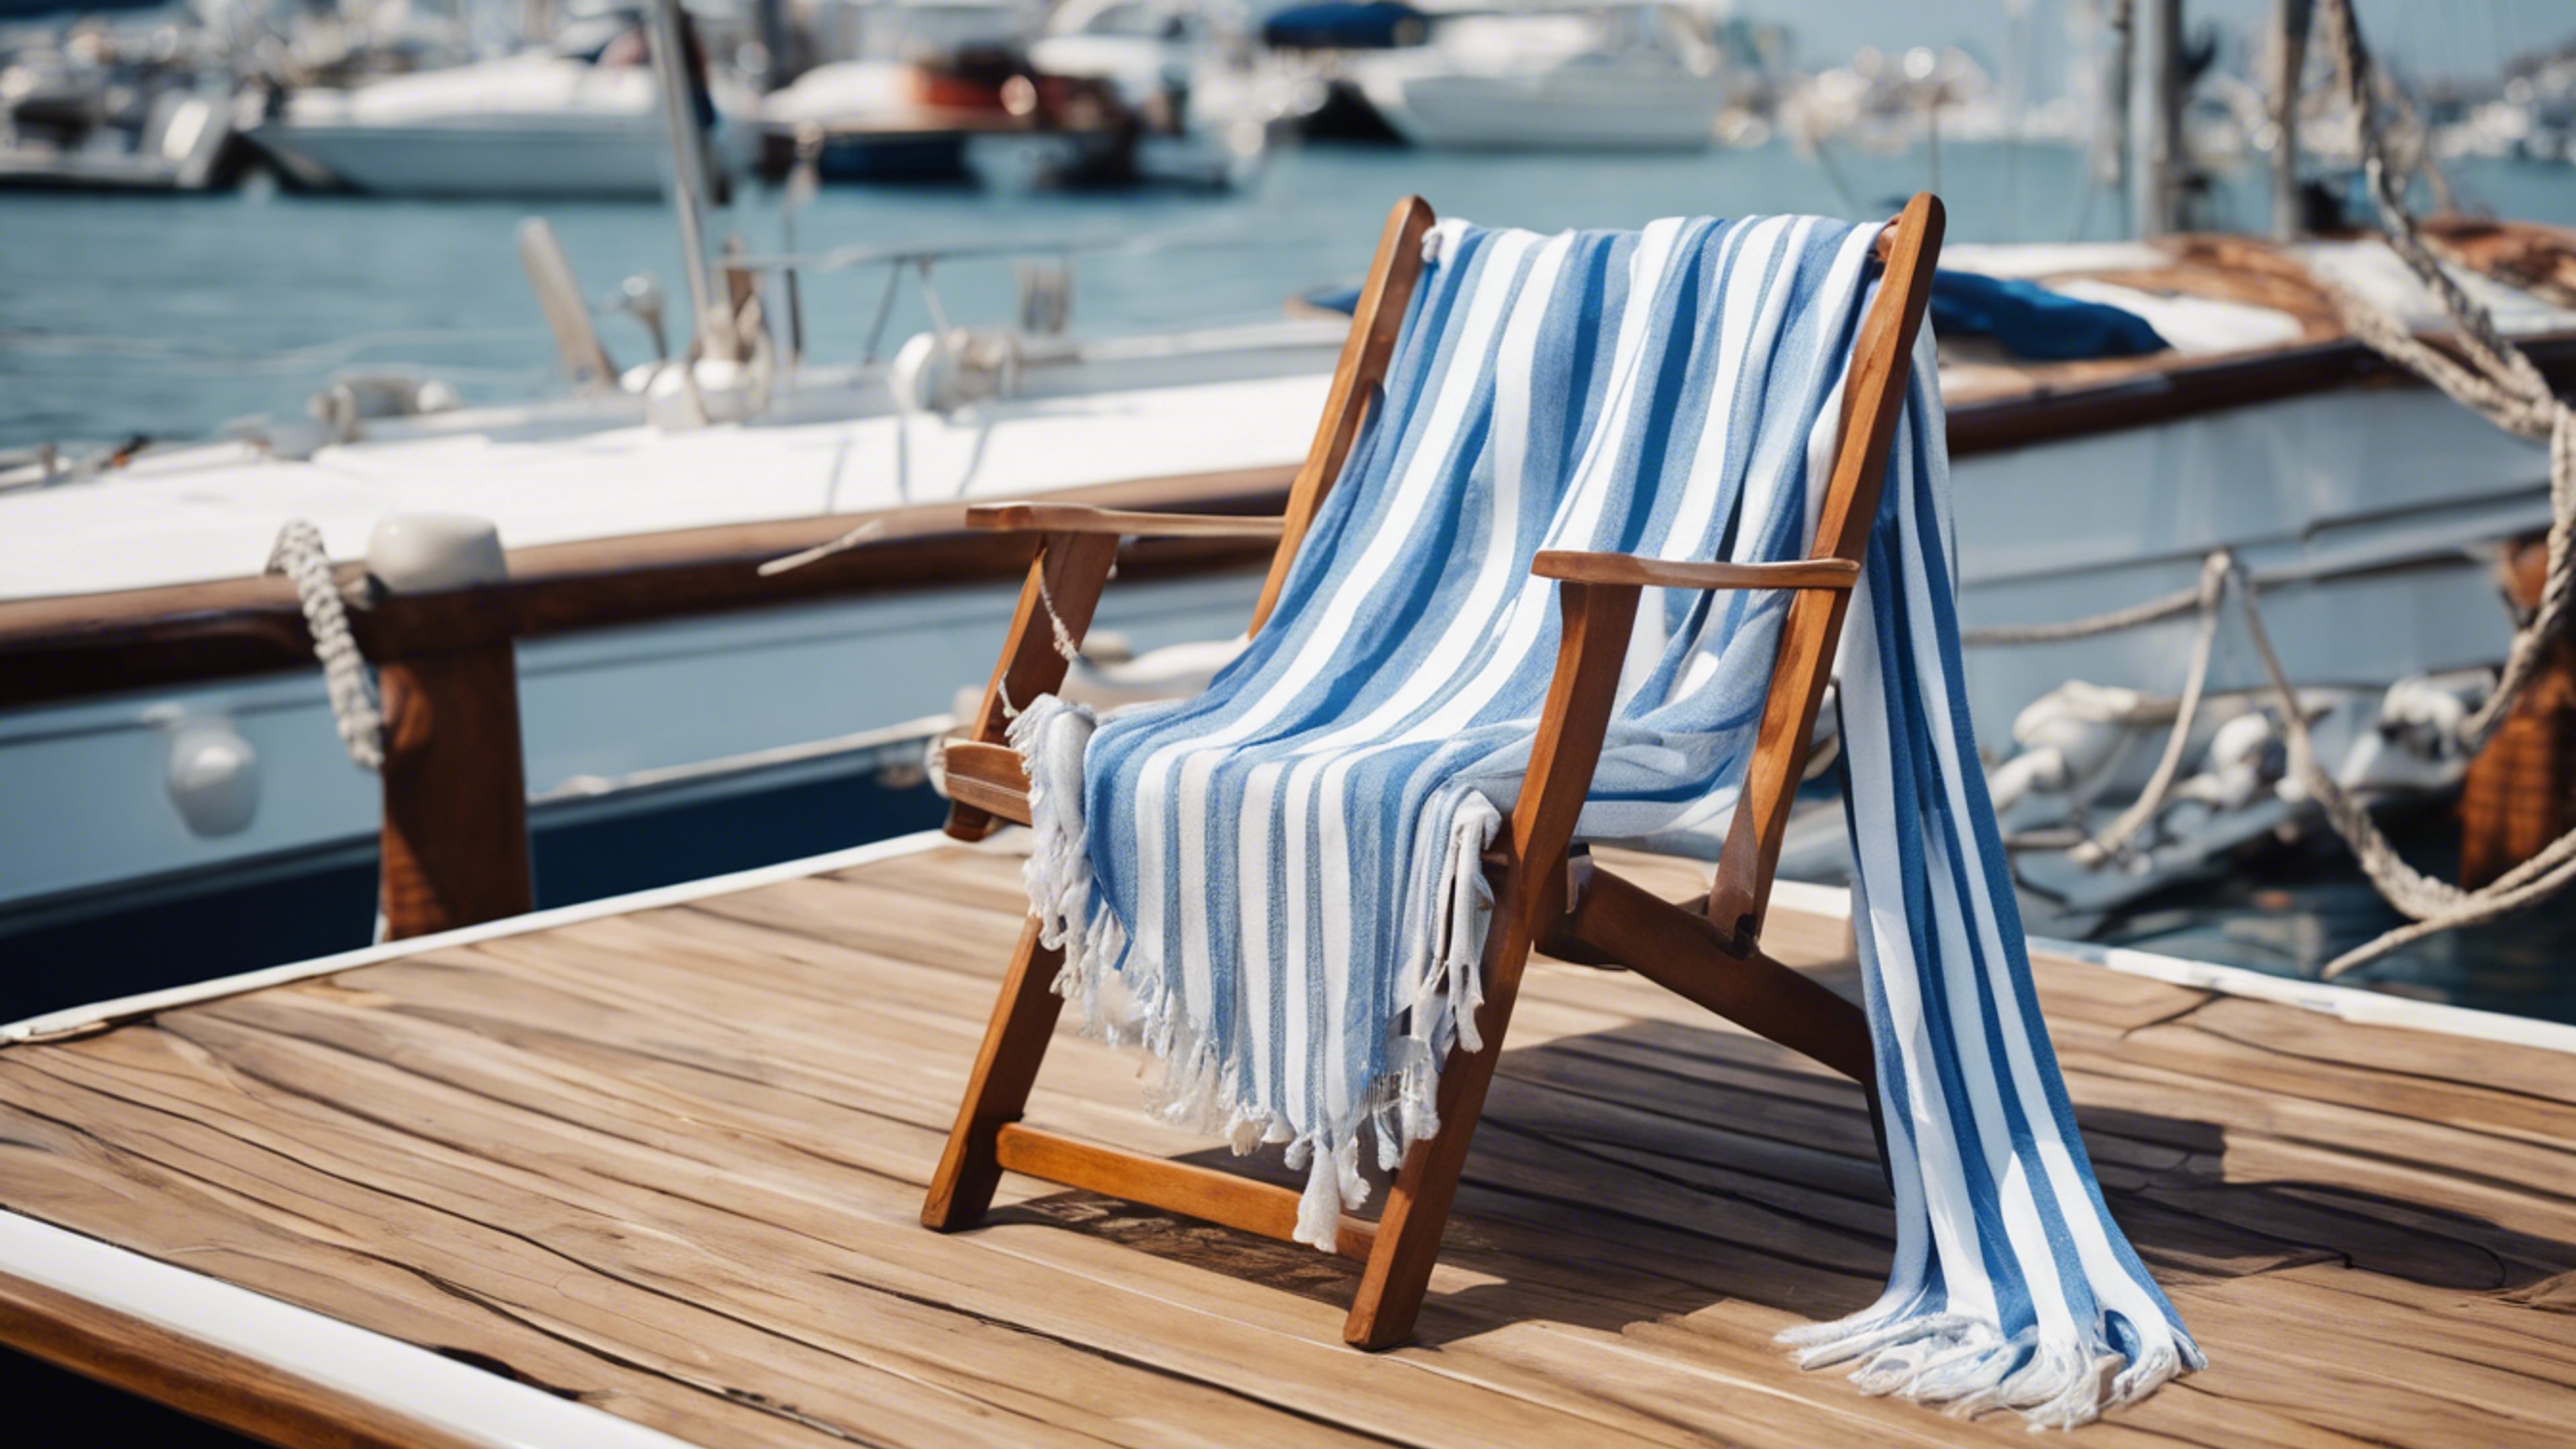 Preppy blue and white striped shawl draped over a teak deck chair on a sailboat. 벽지[8e59a438a9aa4e06a25d]